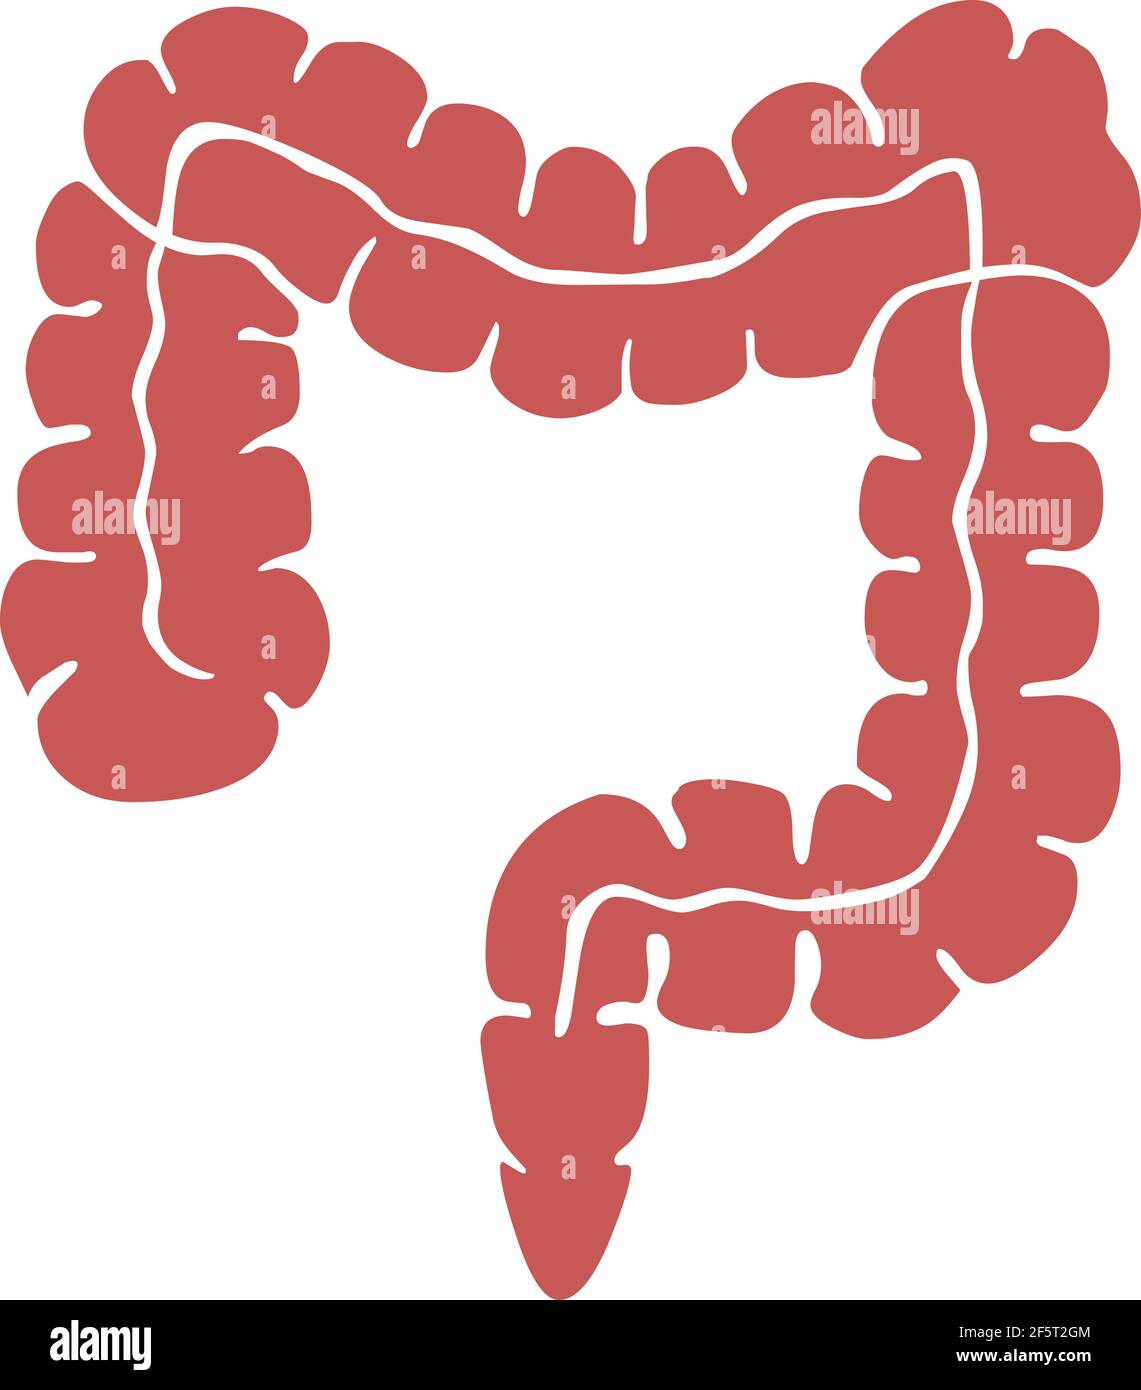 Icona del logo dell'illustrazione dell'intestino crasso isolato su sfondo bianco Illustrazione Vettoriale